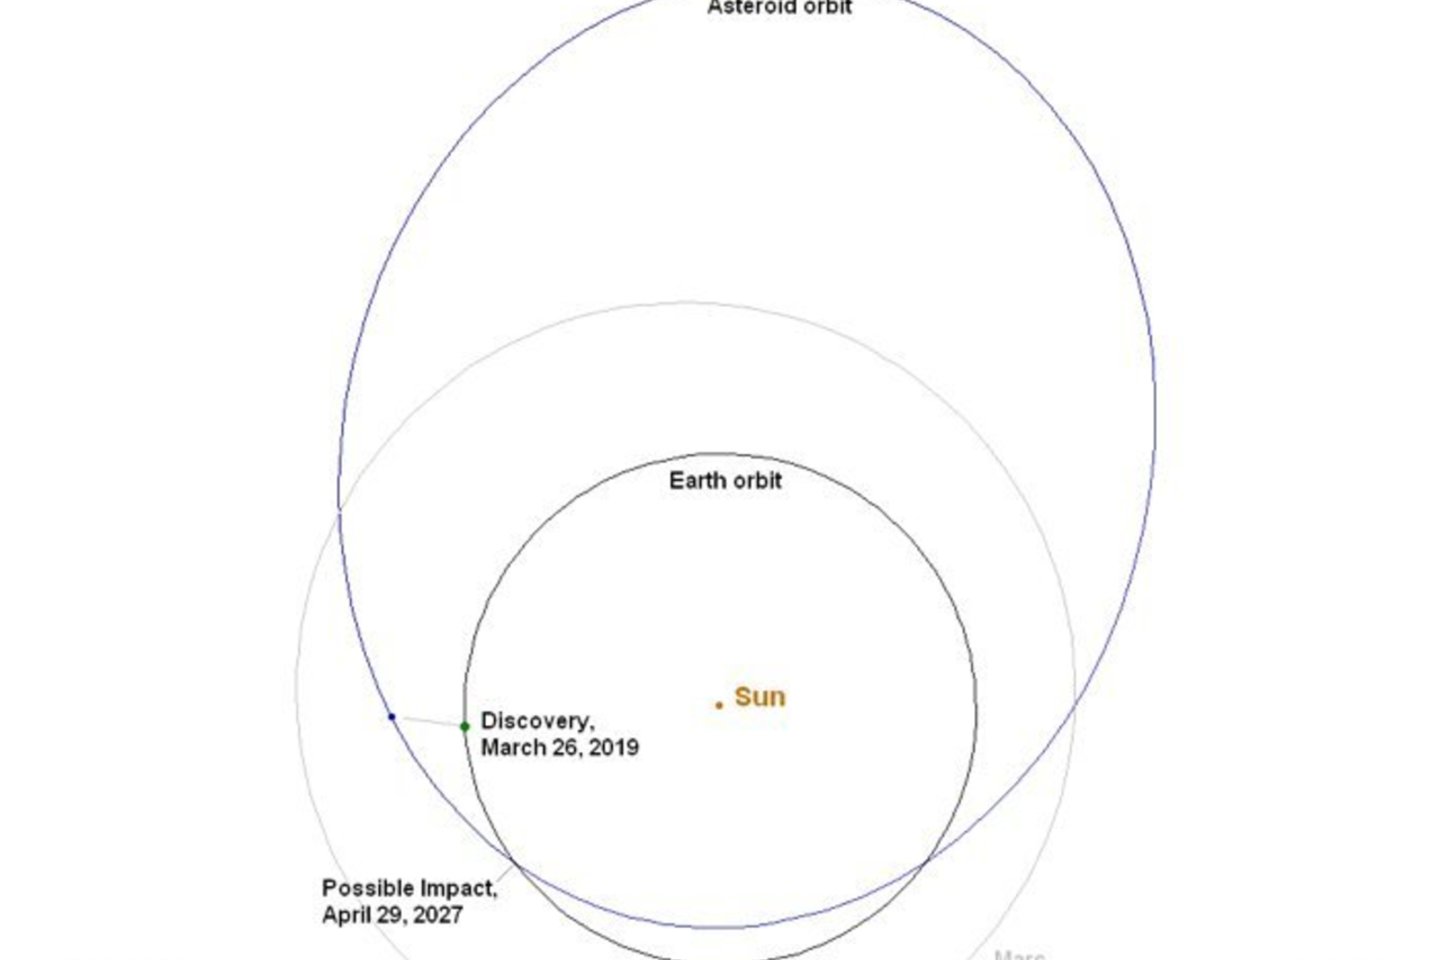 NASA tokias simuliacijas bando jau kurį laiką – ir visai ne be reikalo: pasirodo, Žemė dabar patiria tikrą asteroidų atakos bangą. <br>CNEOS iliustr. 